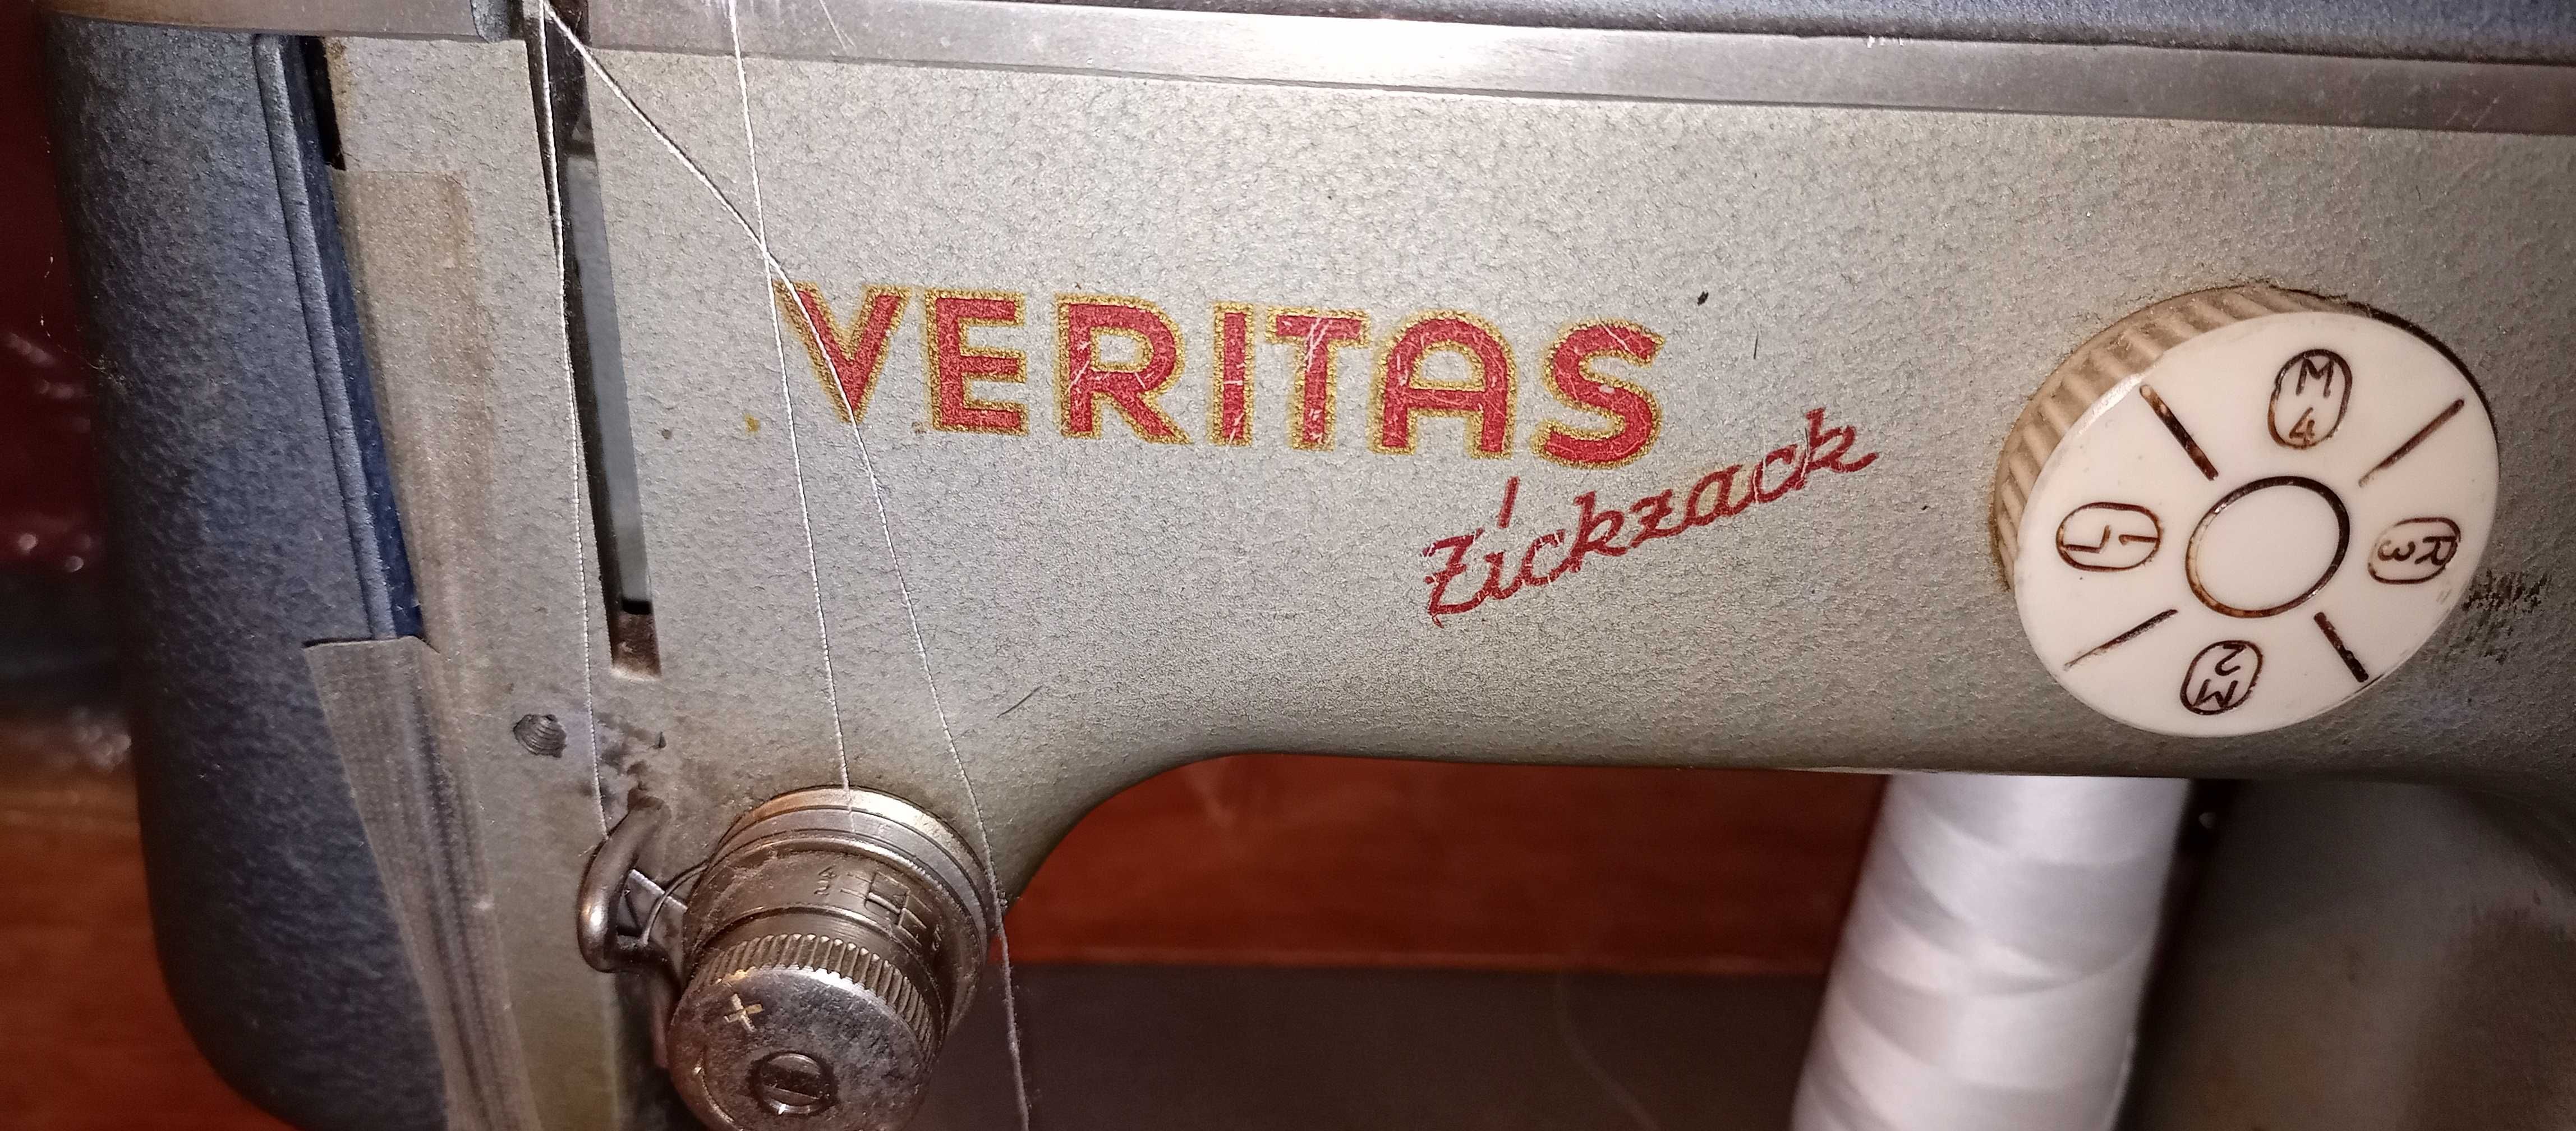 Швейная машинка Veritas. Ножной привод.Германия